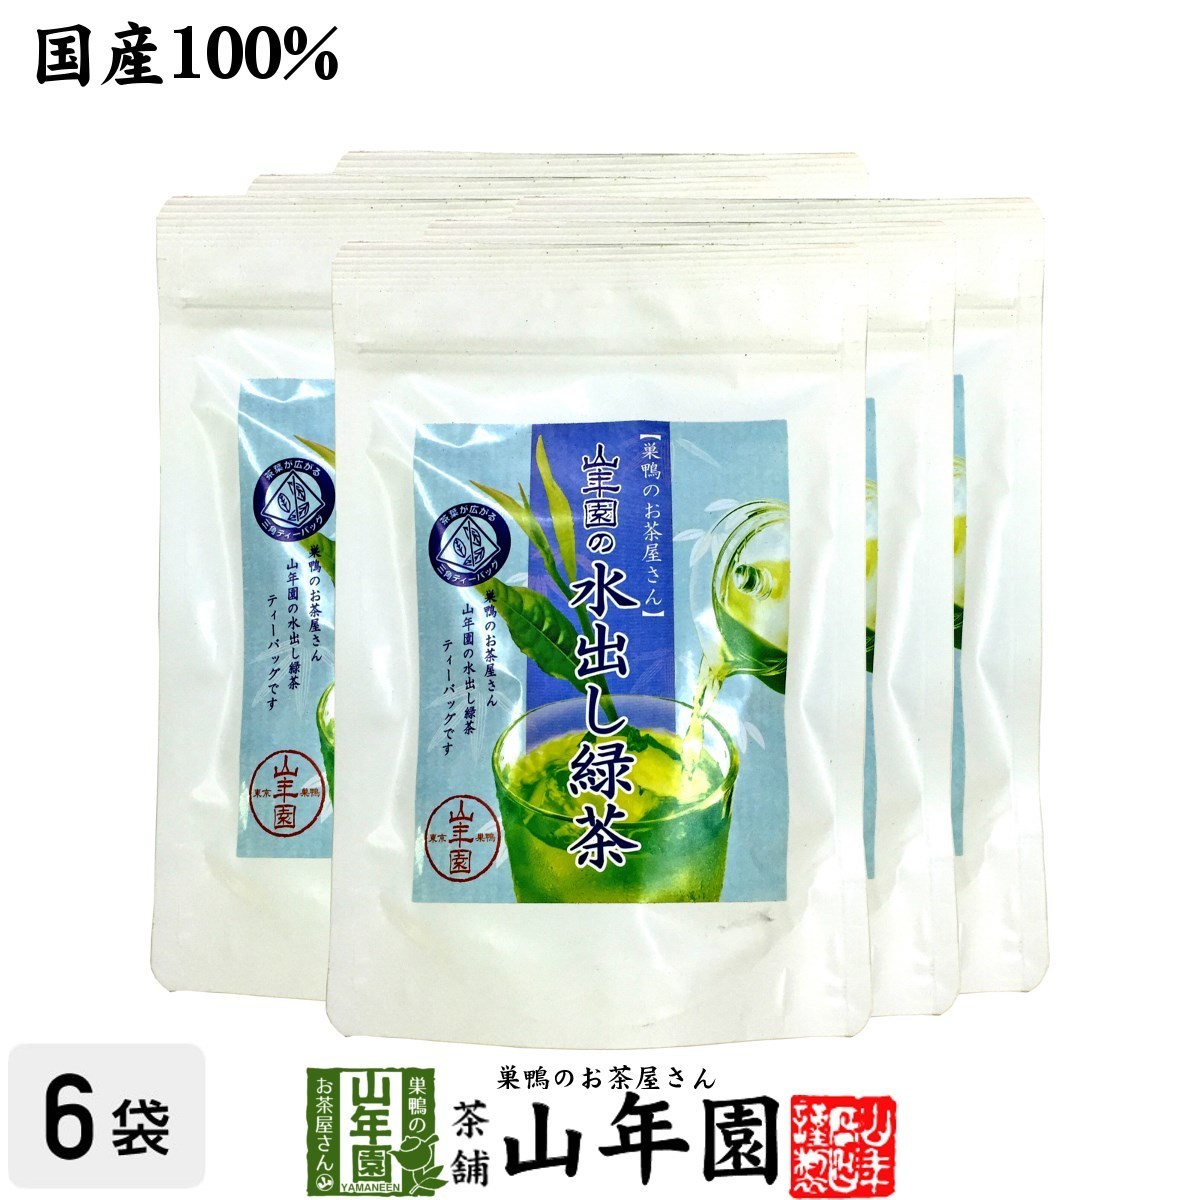 国産100% ゆず緑茶 ティーパック 2.5g×7包×10袋セット 巣鴨のお茶屋さん 山年園